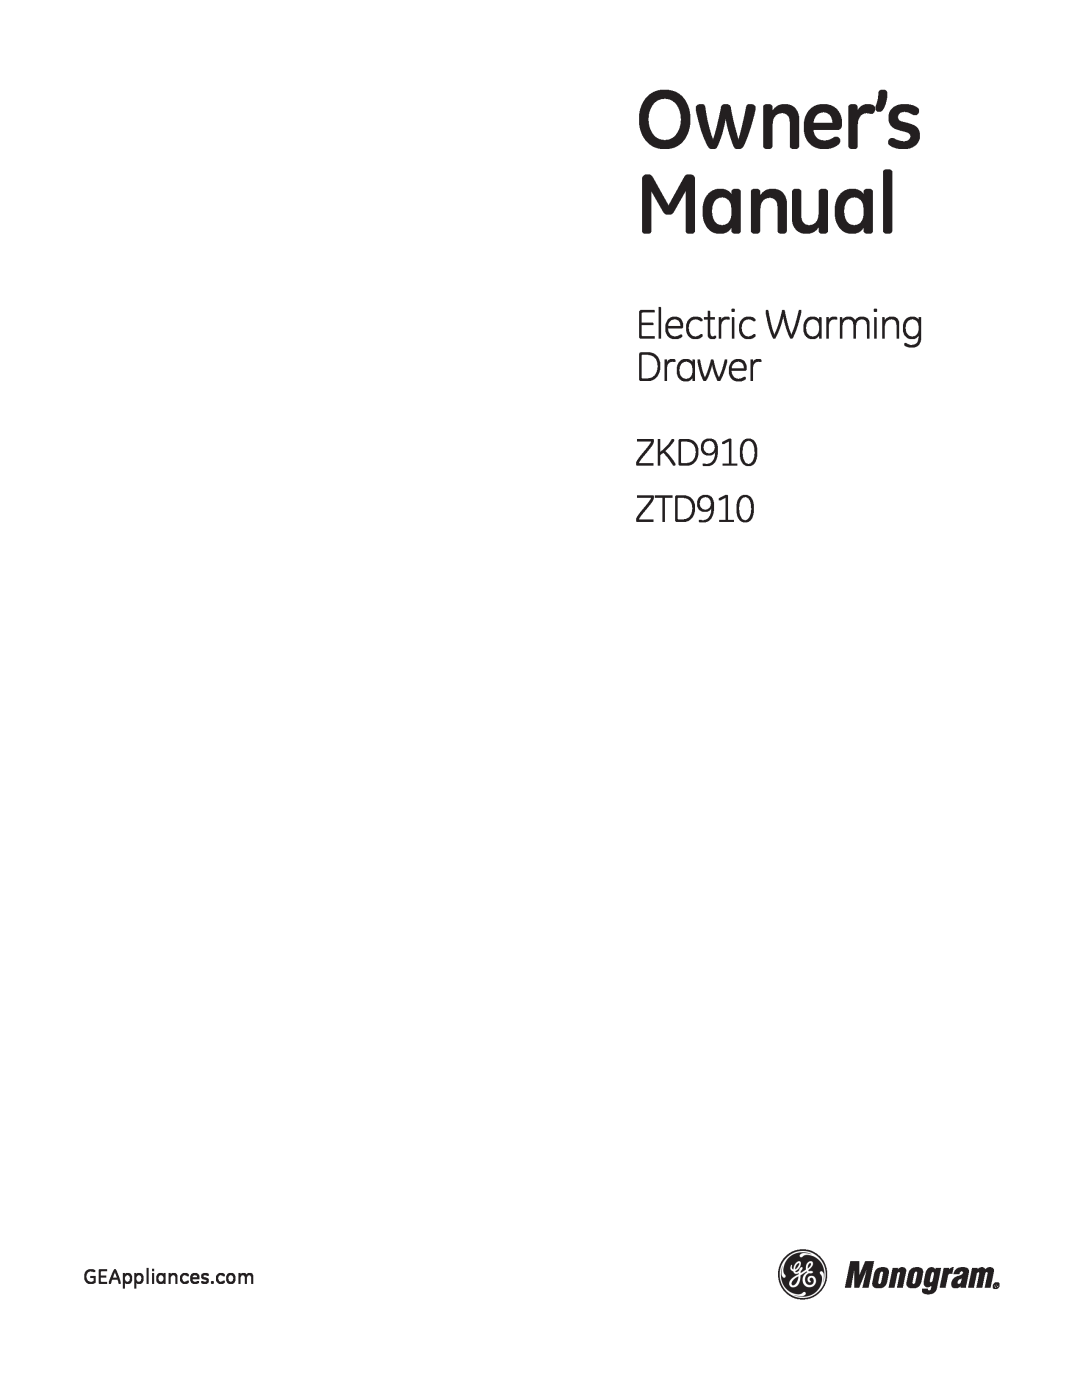 GE owner manual Electric Warming Drawer, ZKD910 ZTD910 